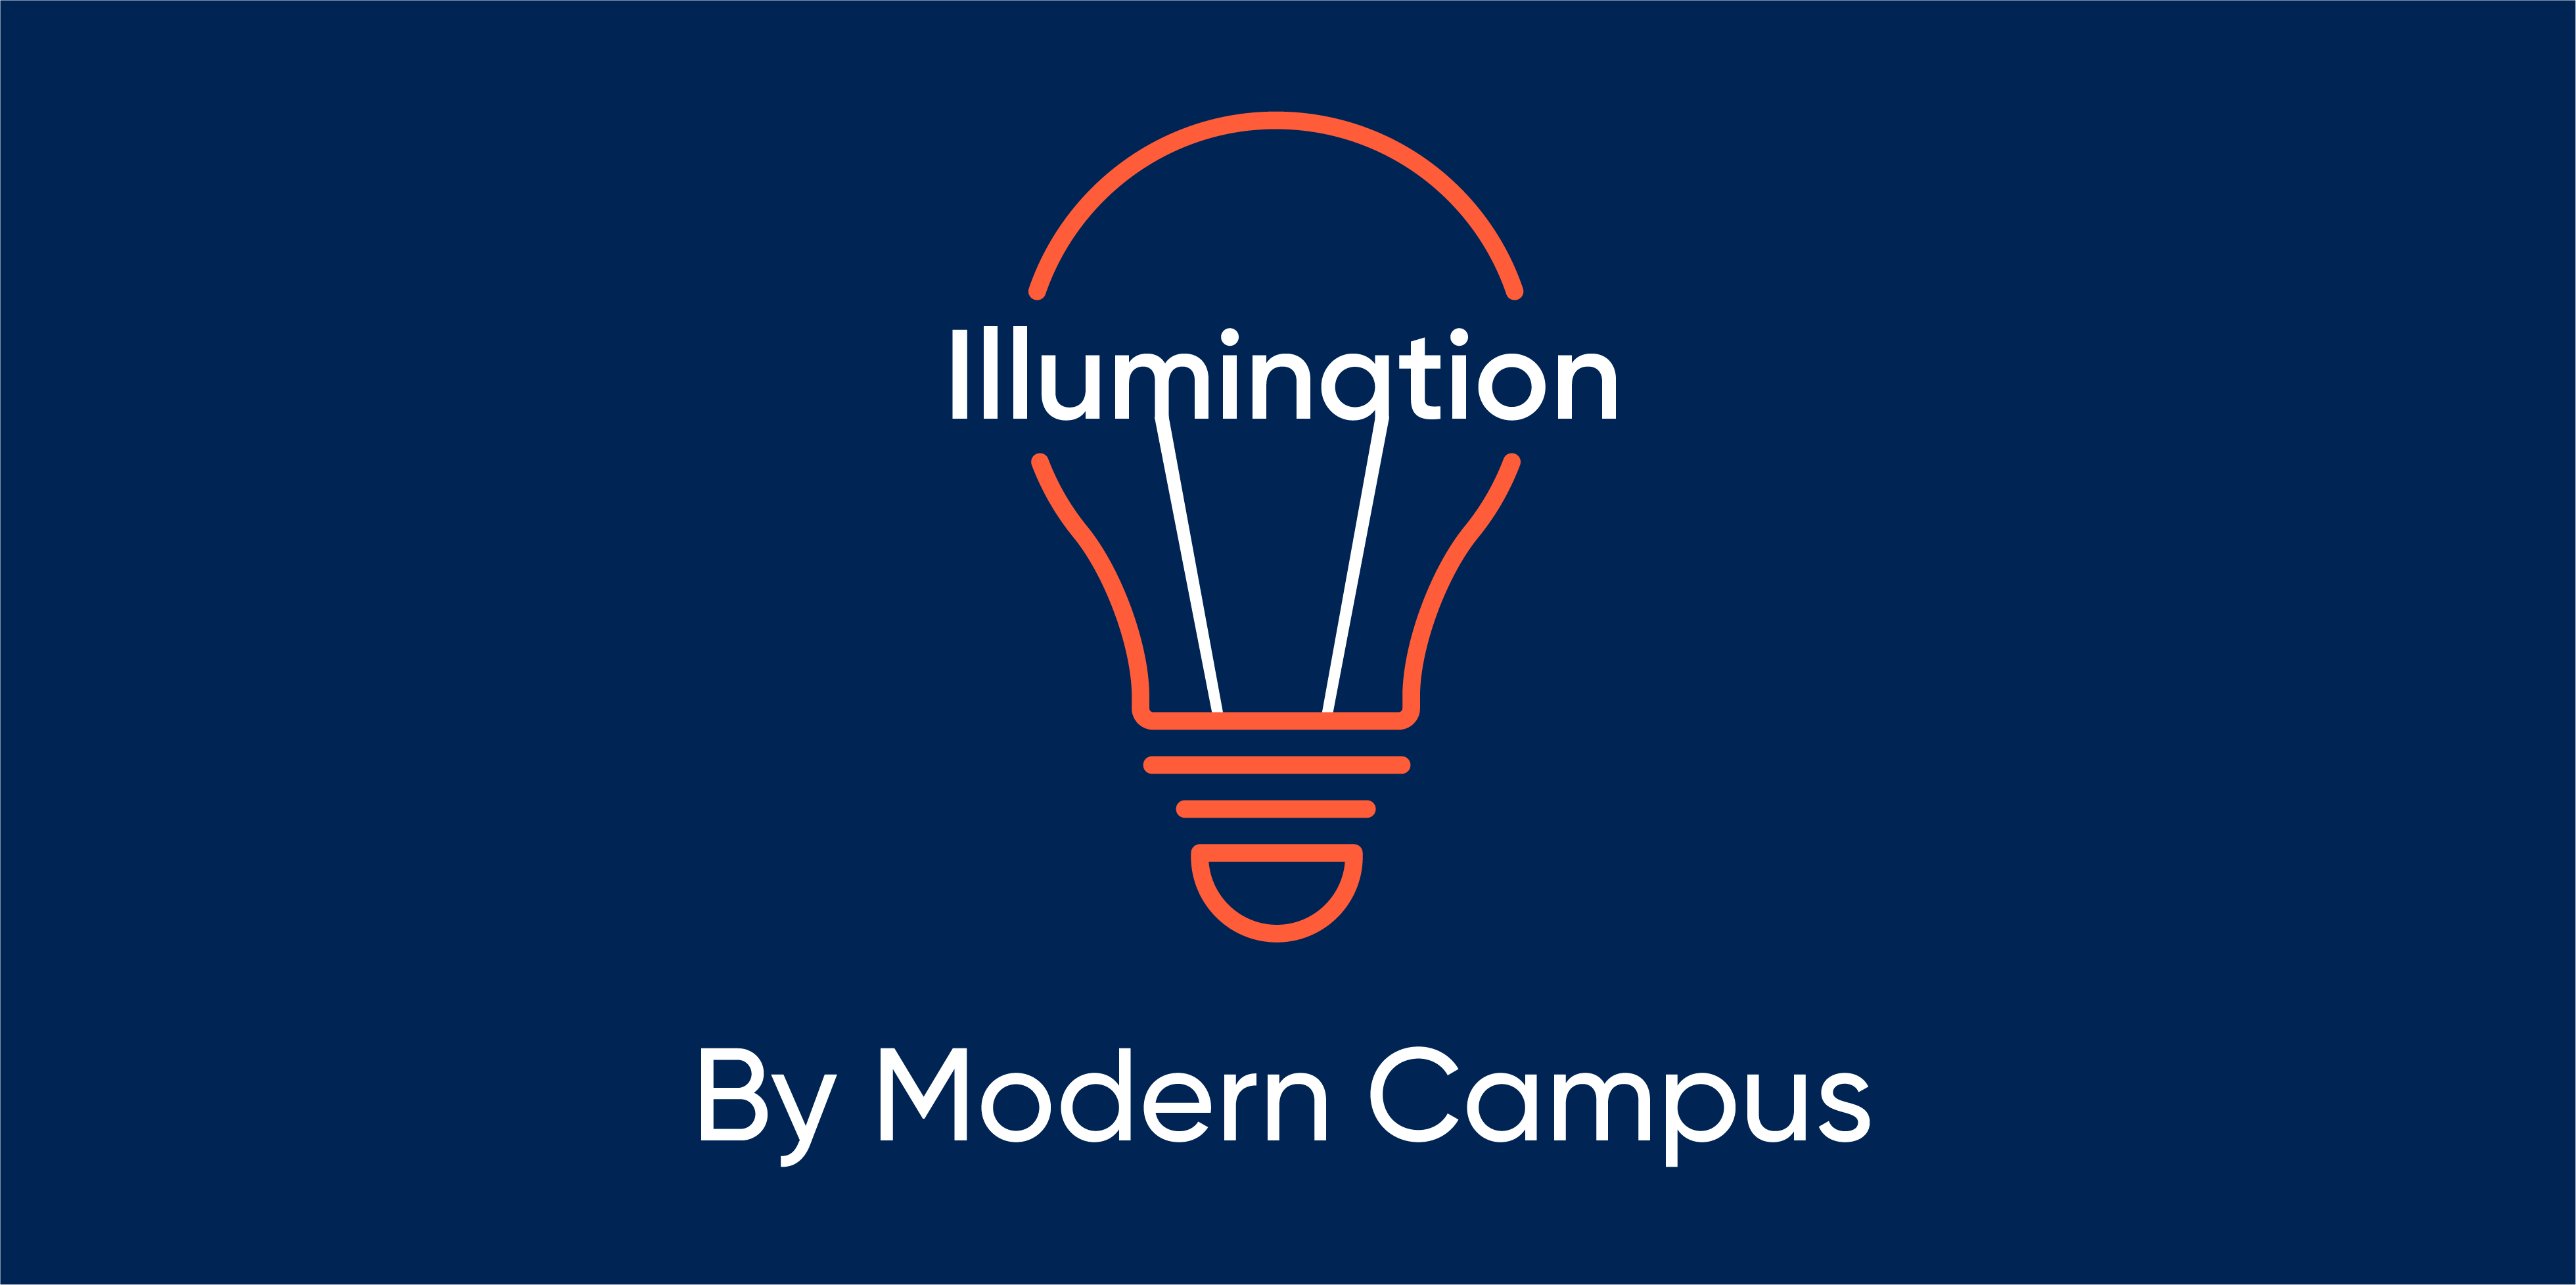 Episode 16: Illumination by Modern Campus